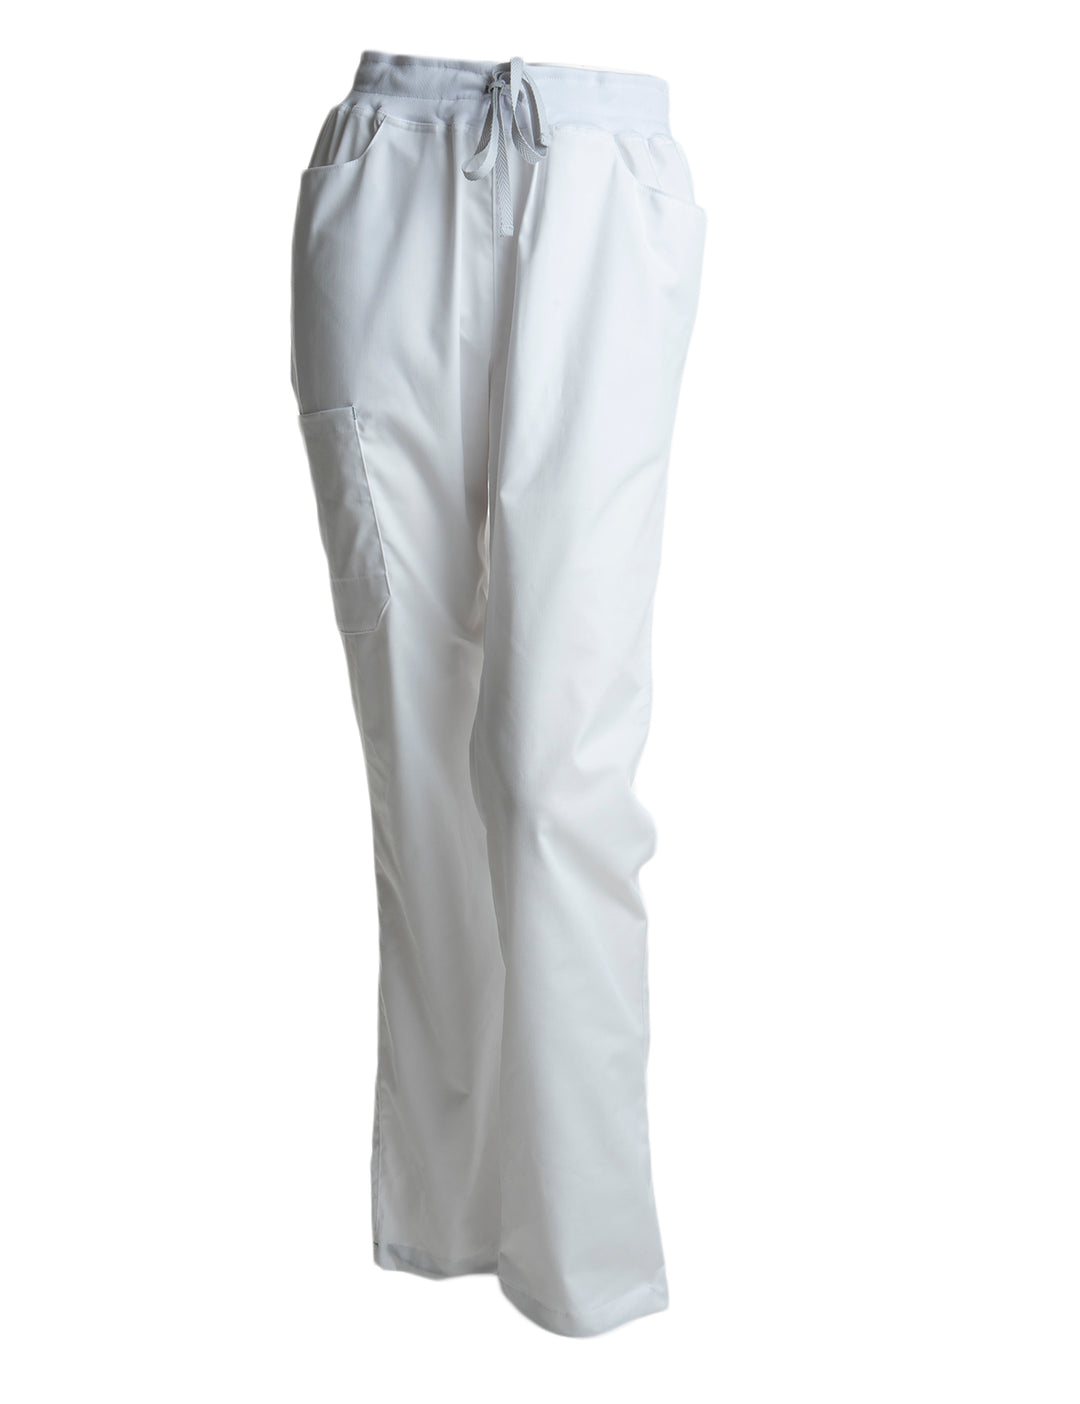 Monikäyttöiset valkoiset housut esimerkiksi terveydenhuoltoon ja hoitotyöhön. Viisi taskua, joista kaksi edessä, yksi vasemmassa reidessä ja kaksi takana. Nauhakiinnitys.